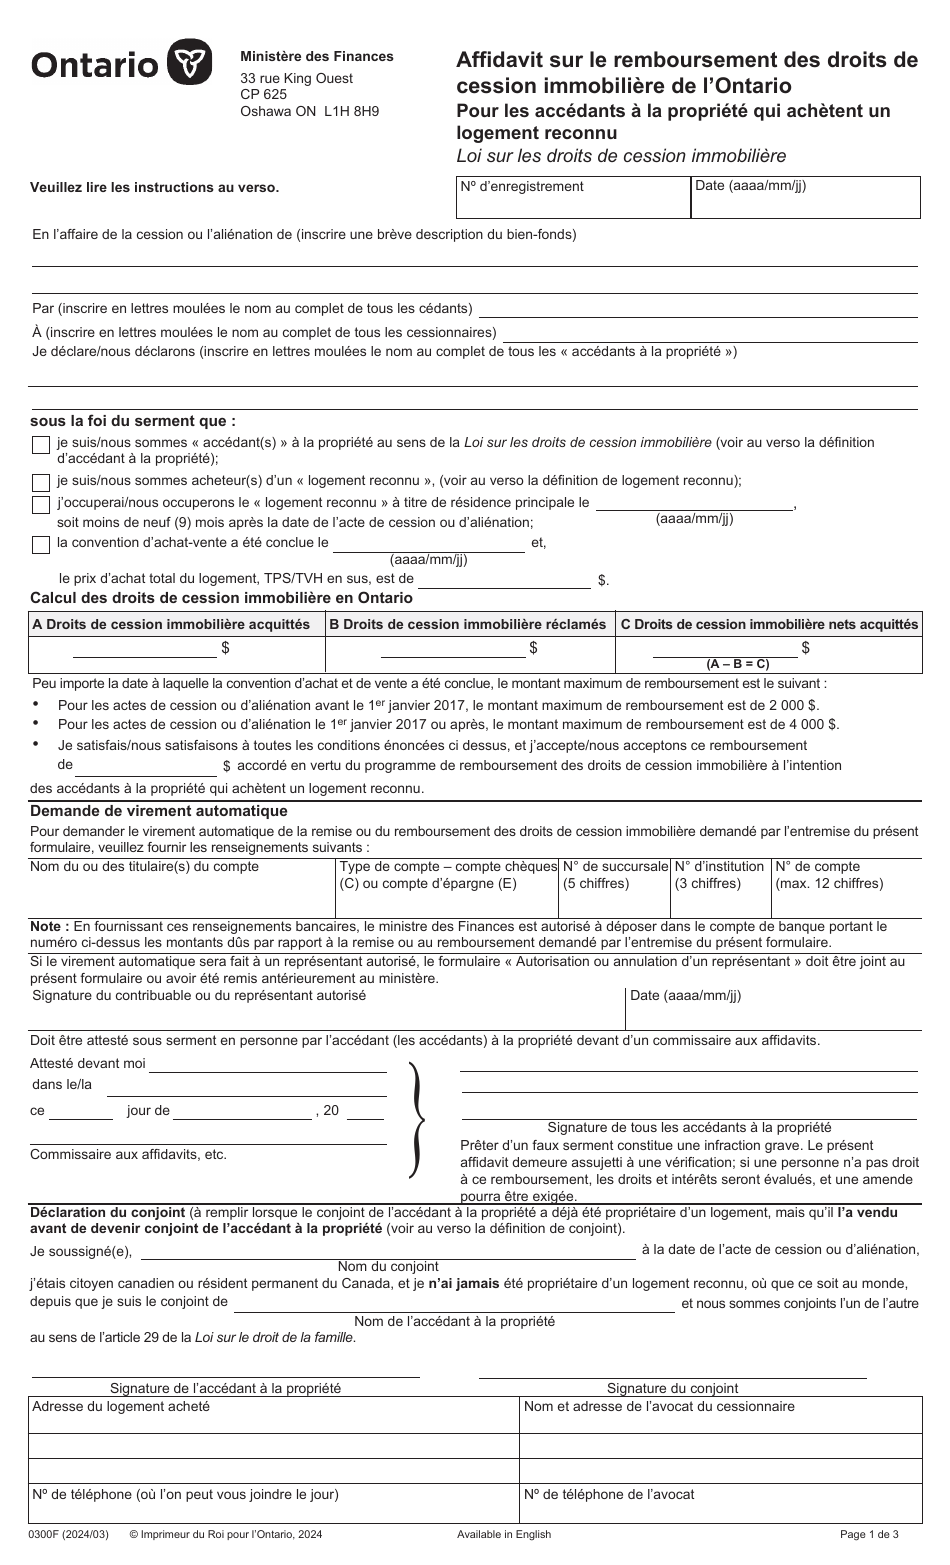 Forme 0300F Affidavit Sur Le Remboursement DES Droits De Cession Immobiliere De Lontario Pour Les Accedants a La Propriete Qui Achetent Un Logement Reconnu - Ontario, Canada (French), Page 1